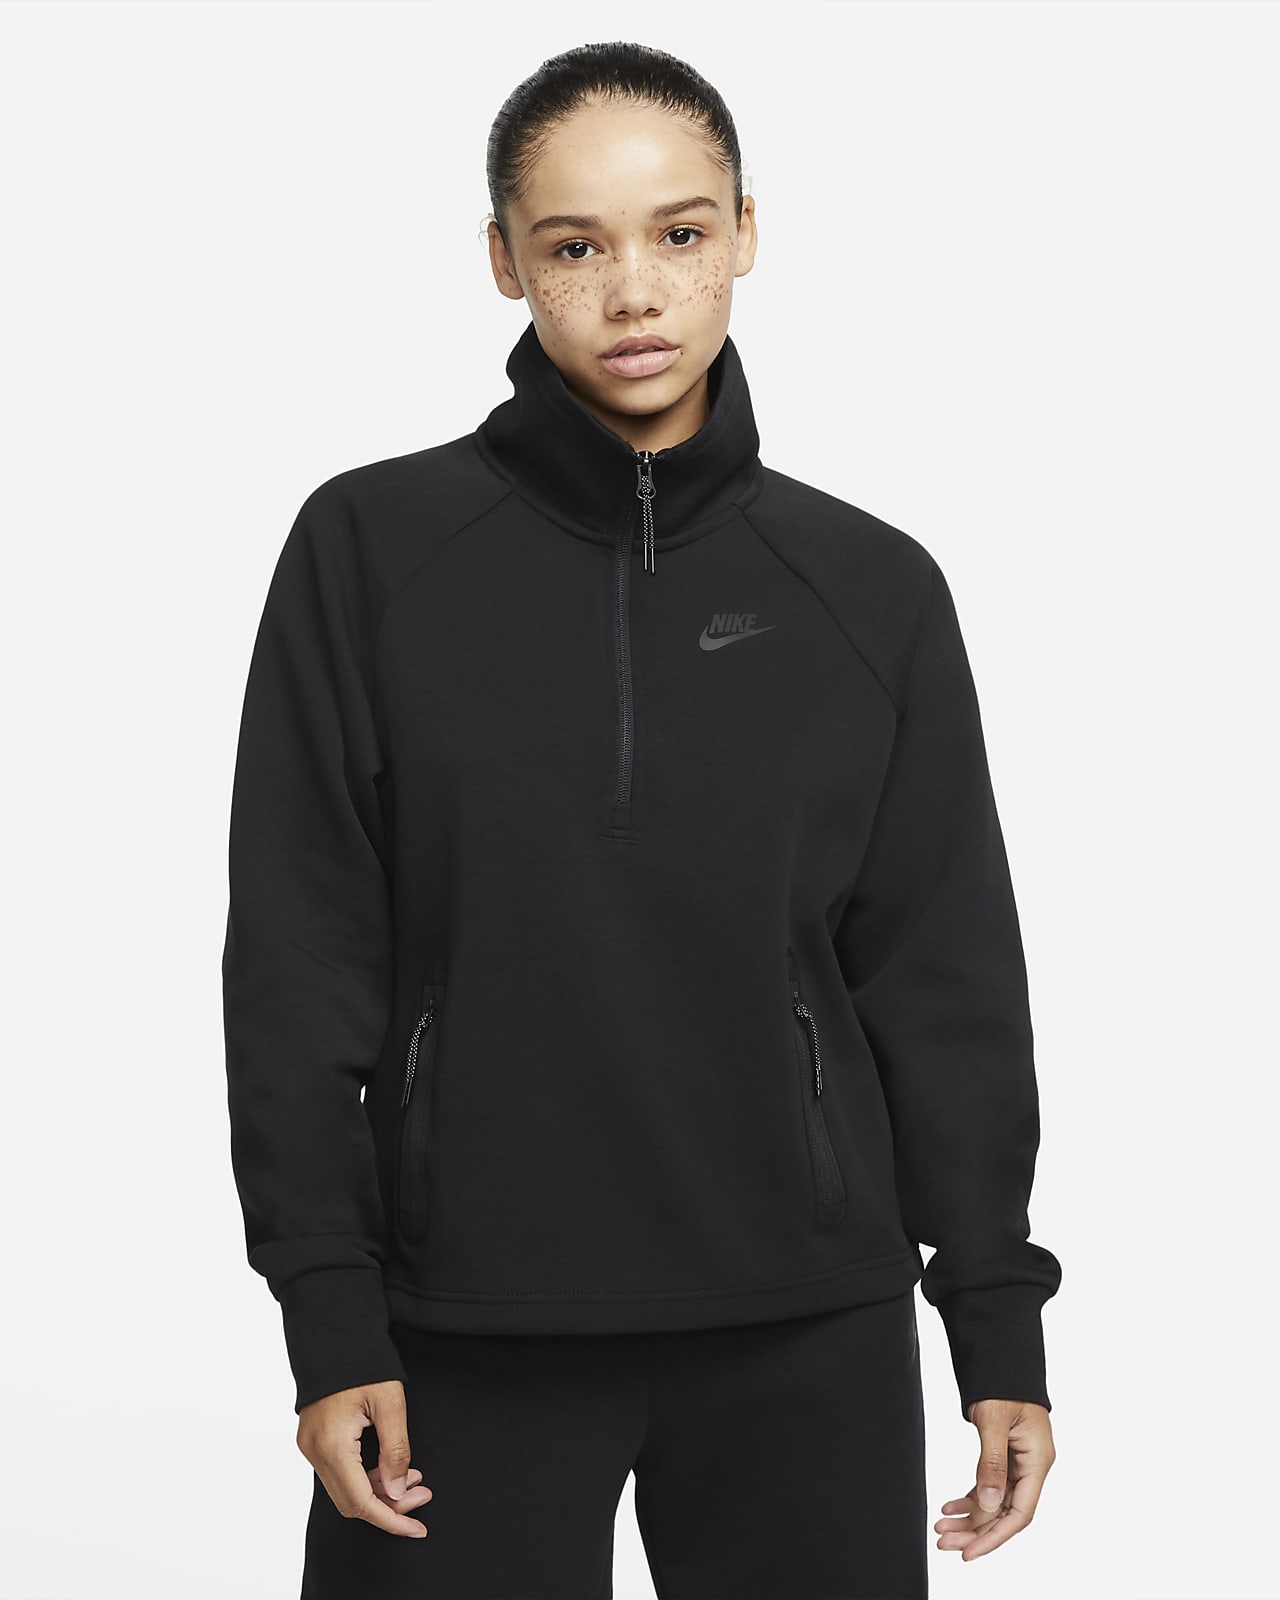 Nike Sportswear Tech Fleece Women's 1/4-Zip Top